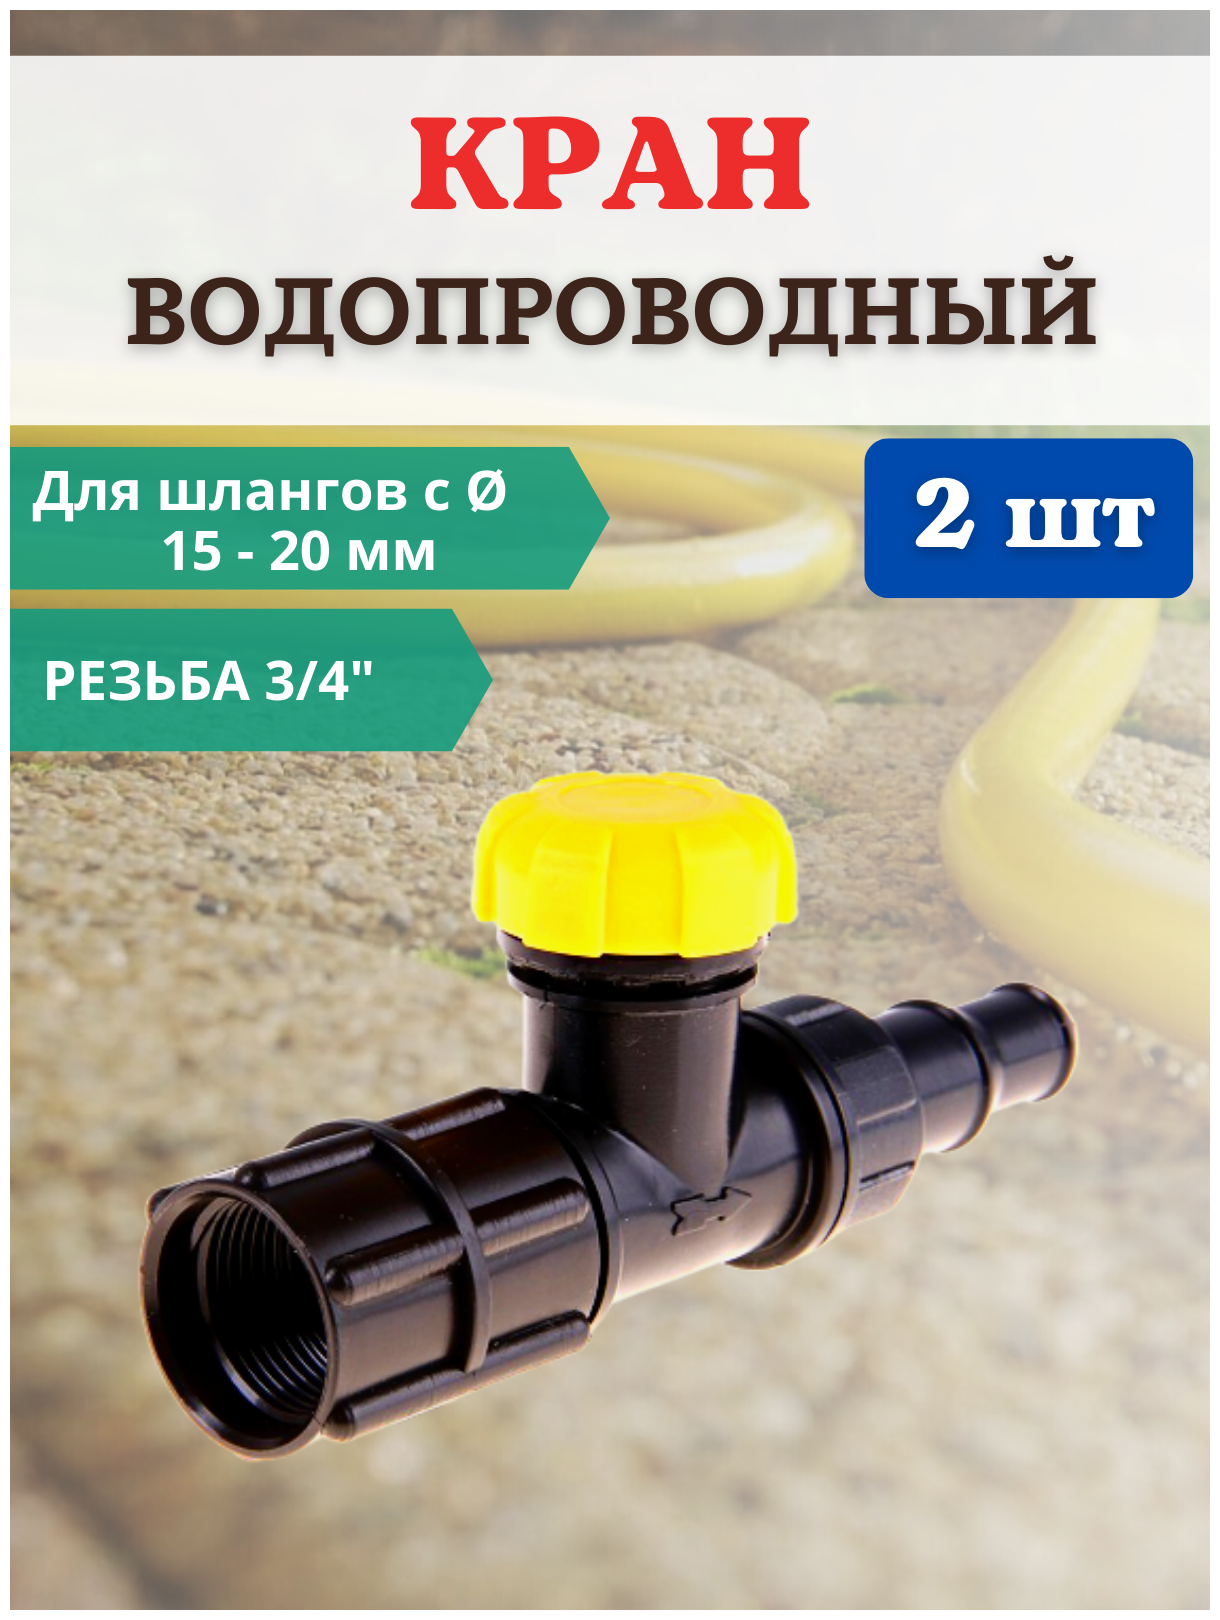 Исток Садовый водопроводный кран КВ-20М-СШ 3/4" для шланга D 15-20 мм 2 шт.